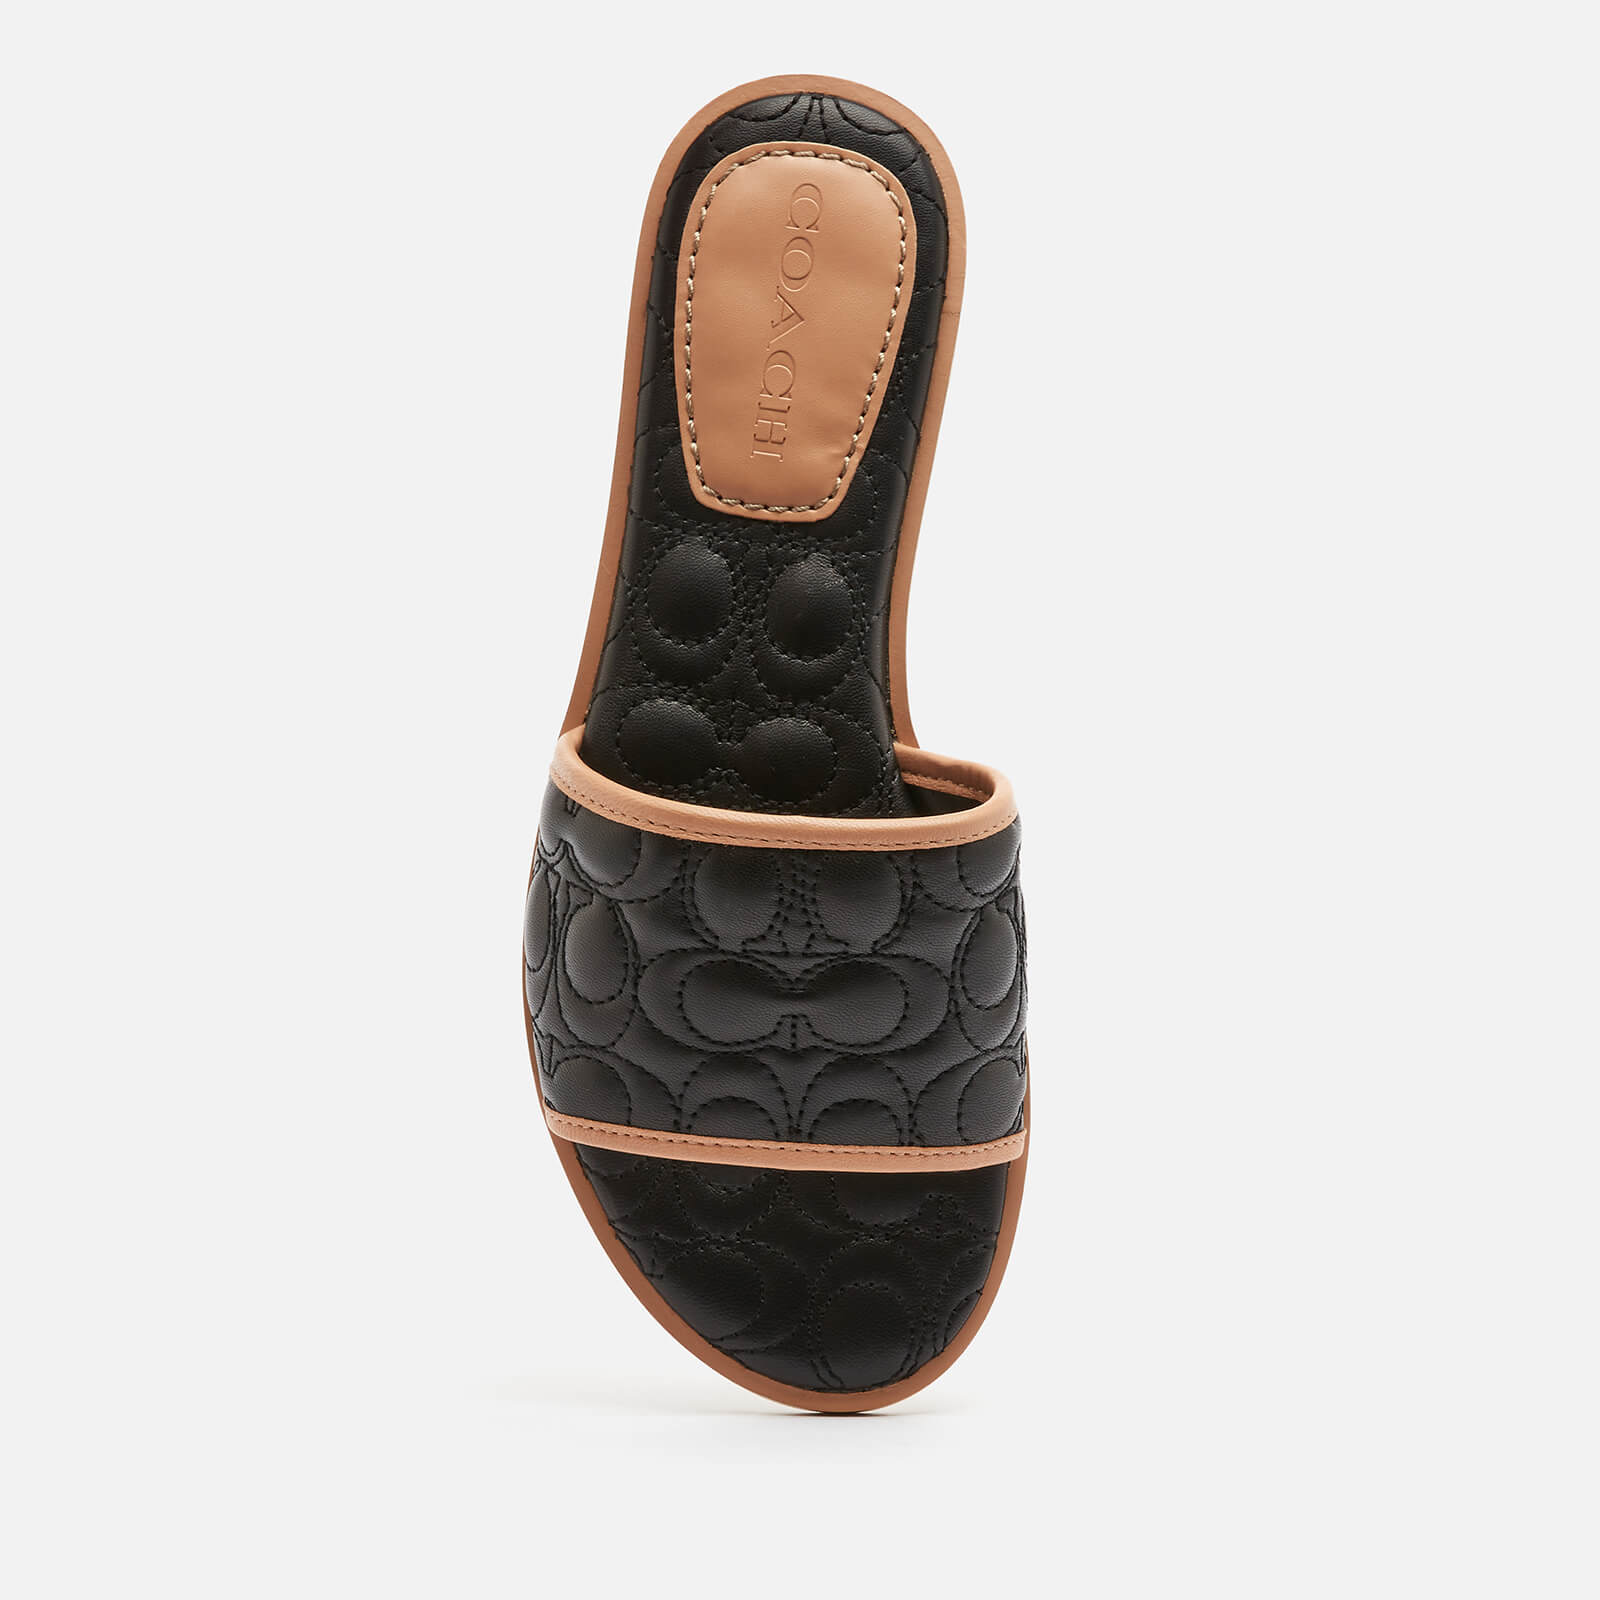 Coach Women's Olivea Quilted Leather Slide Sandals - Black - Uk 4